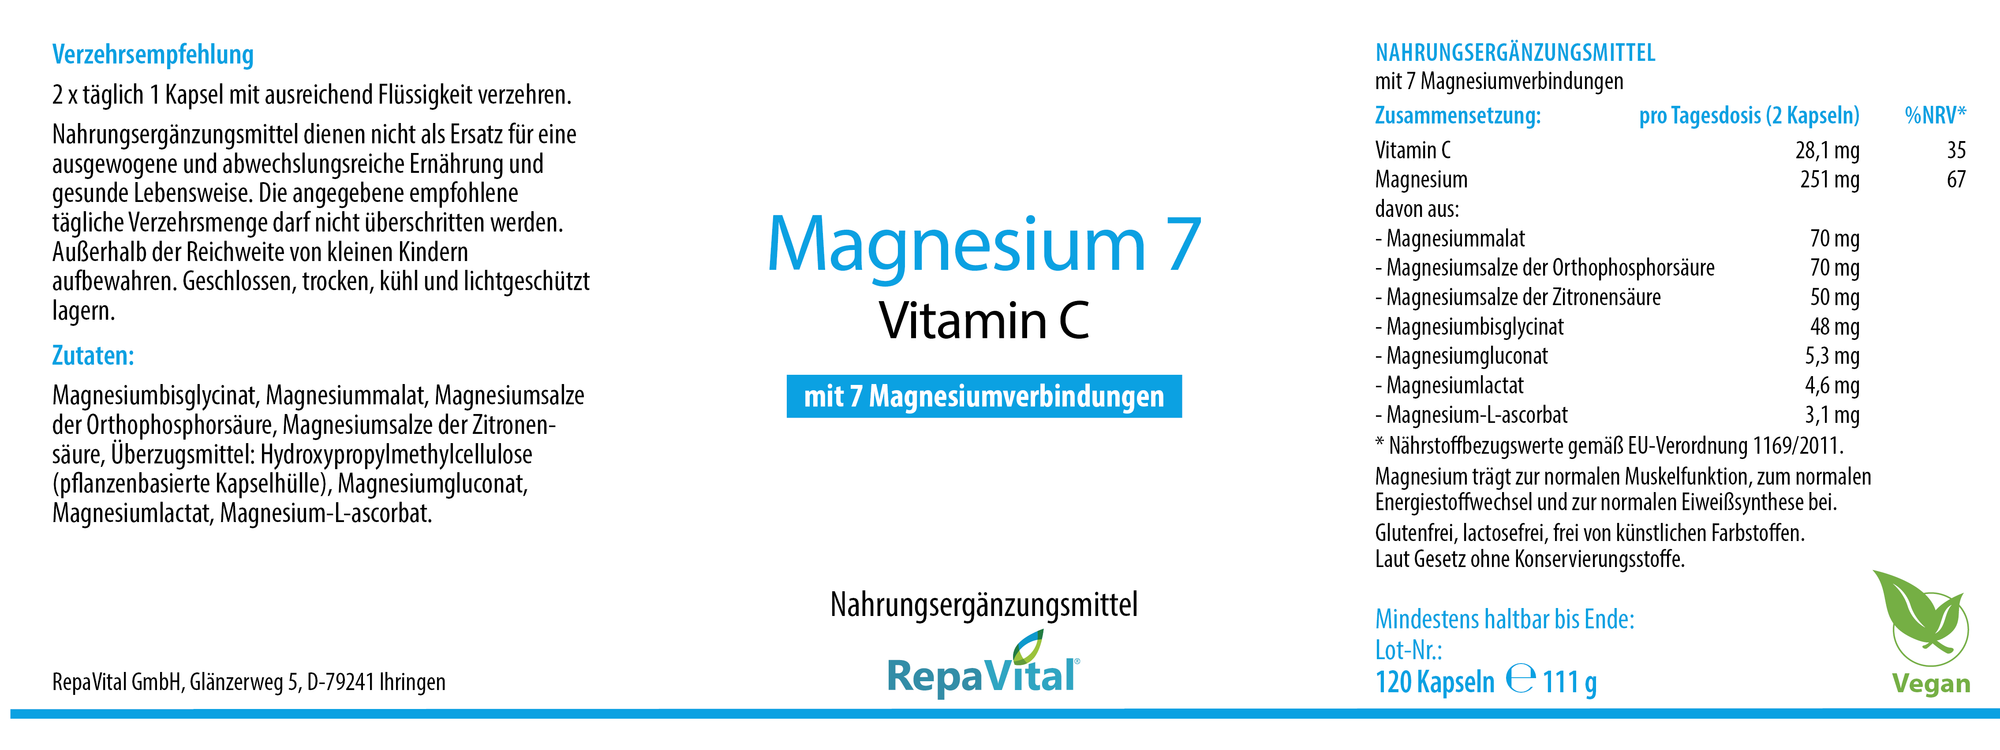 Magnesium 7 und Vitamin C